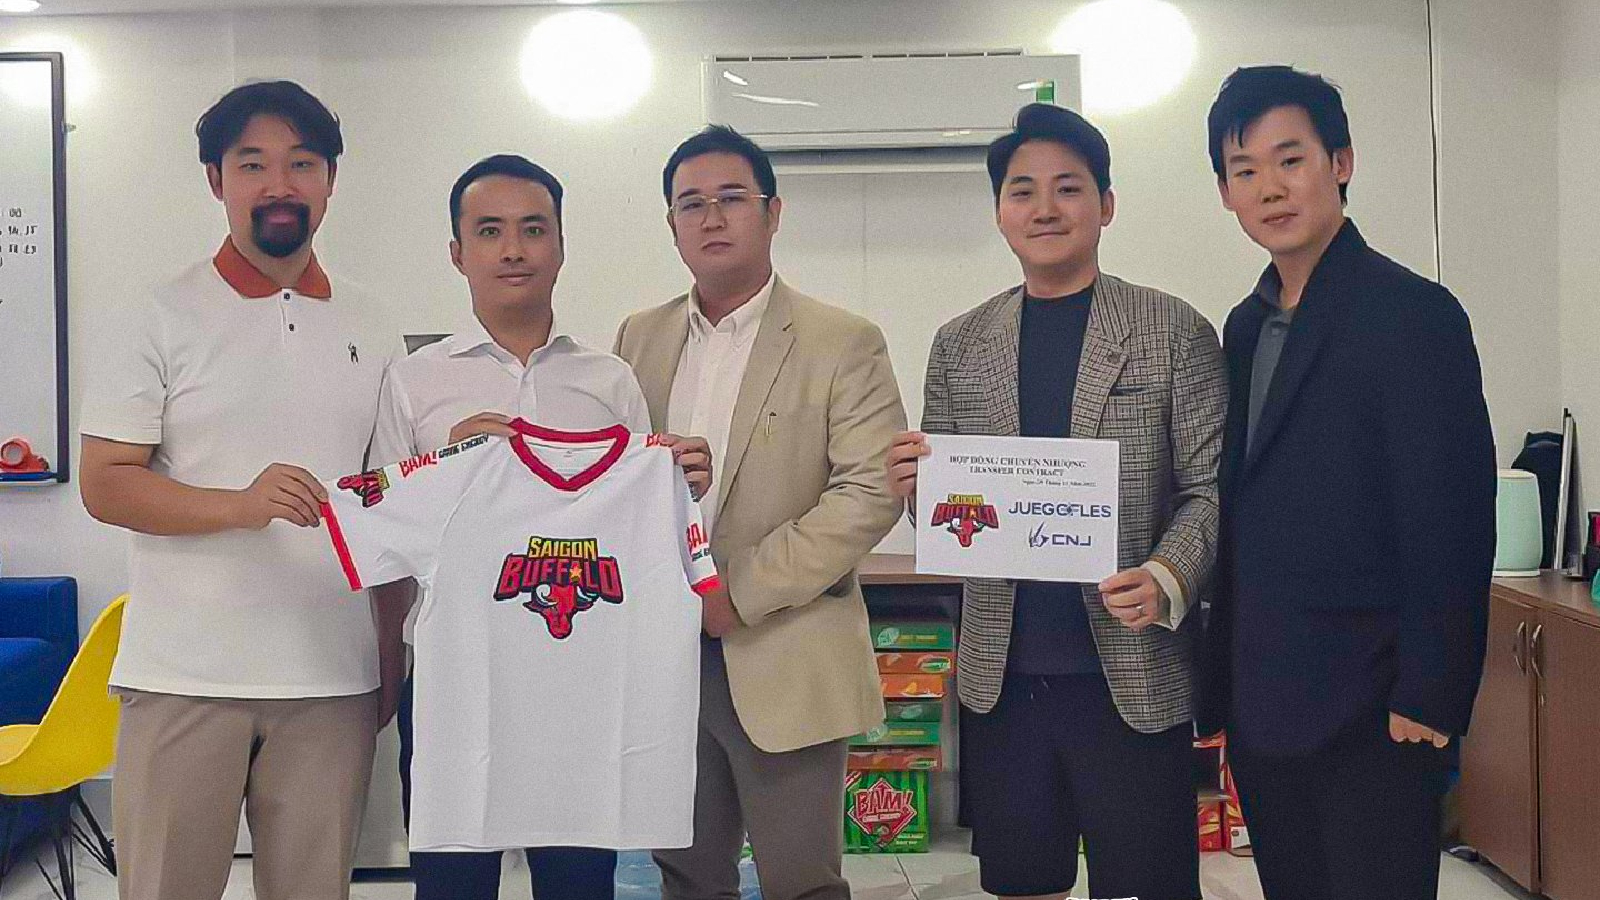 Vietnamese esports org Saigon Buffalo acquired by JUEGO